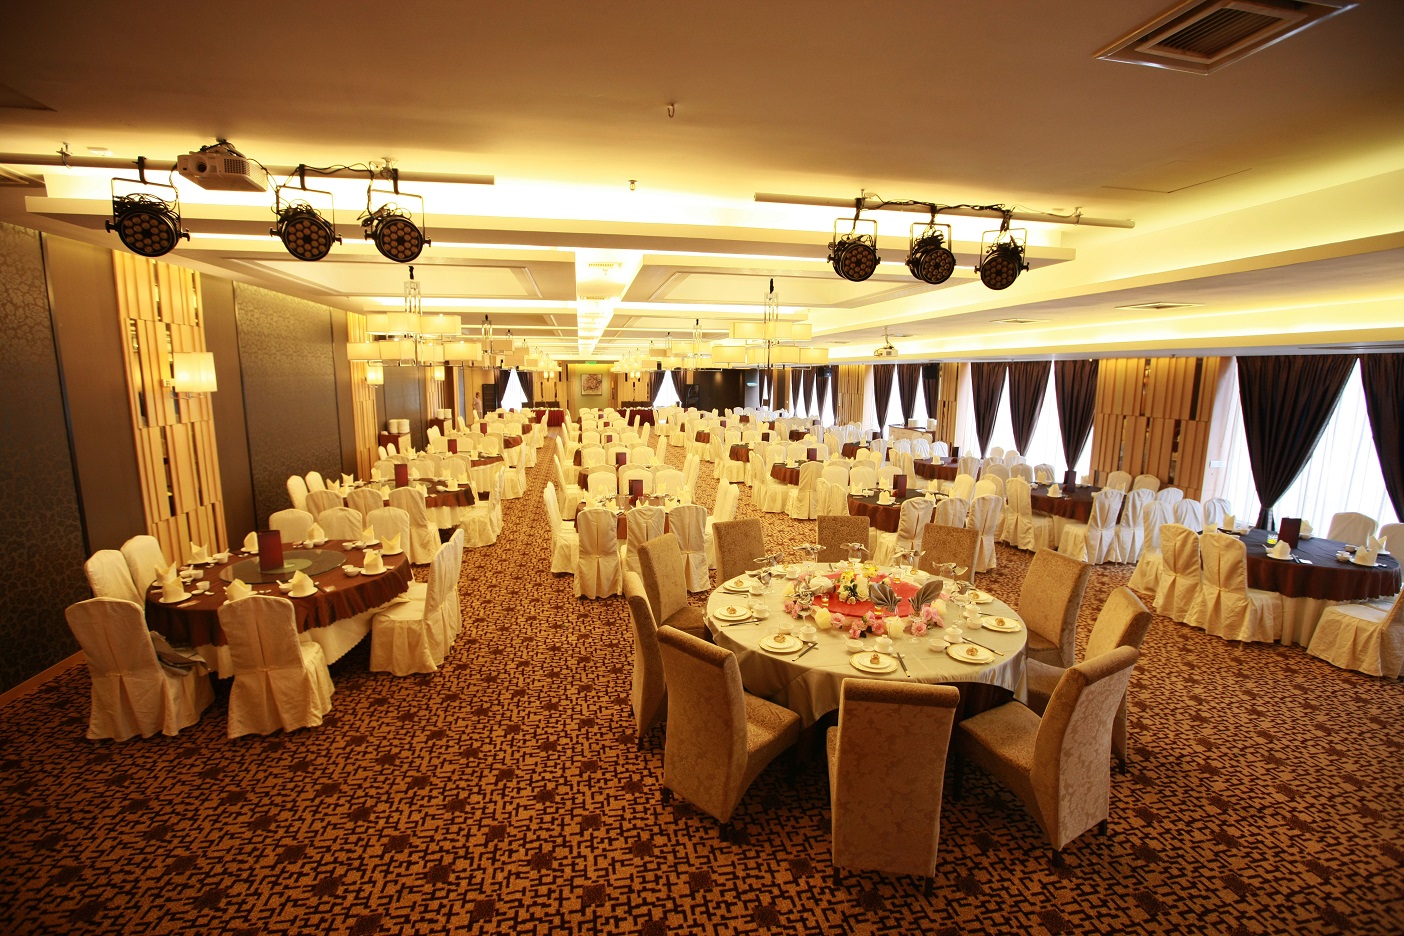 Stage View - Restaurant Banquet Hall